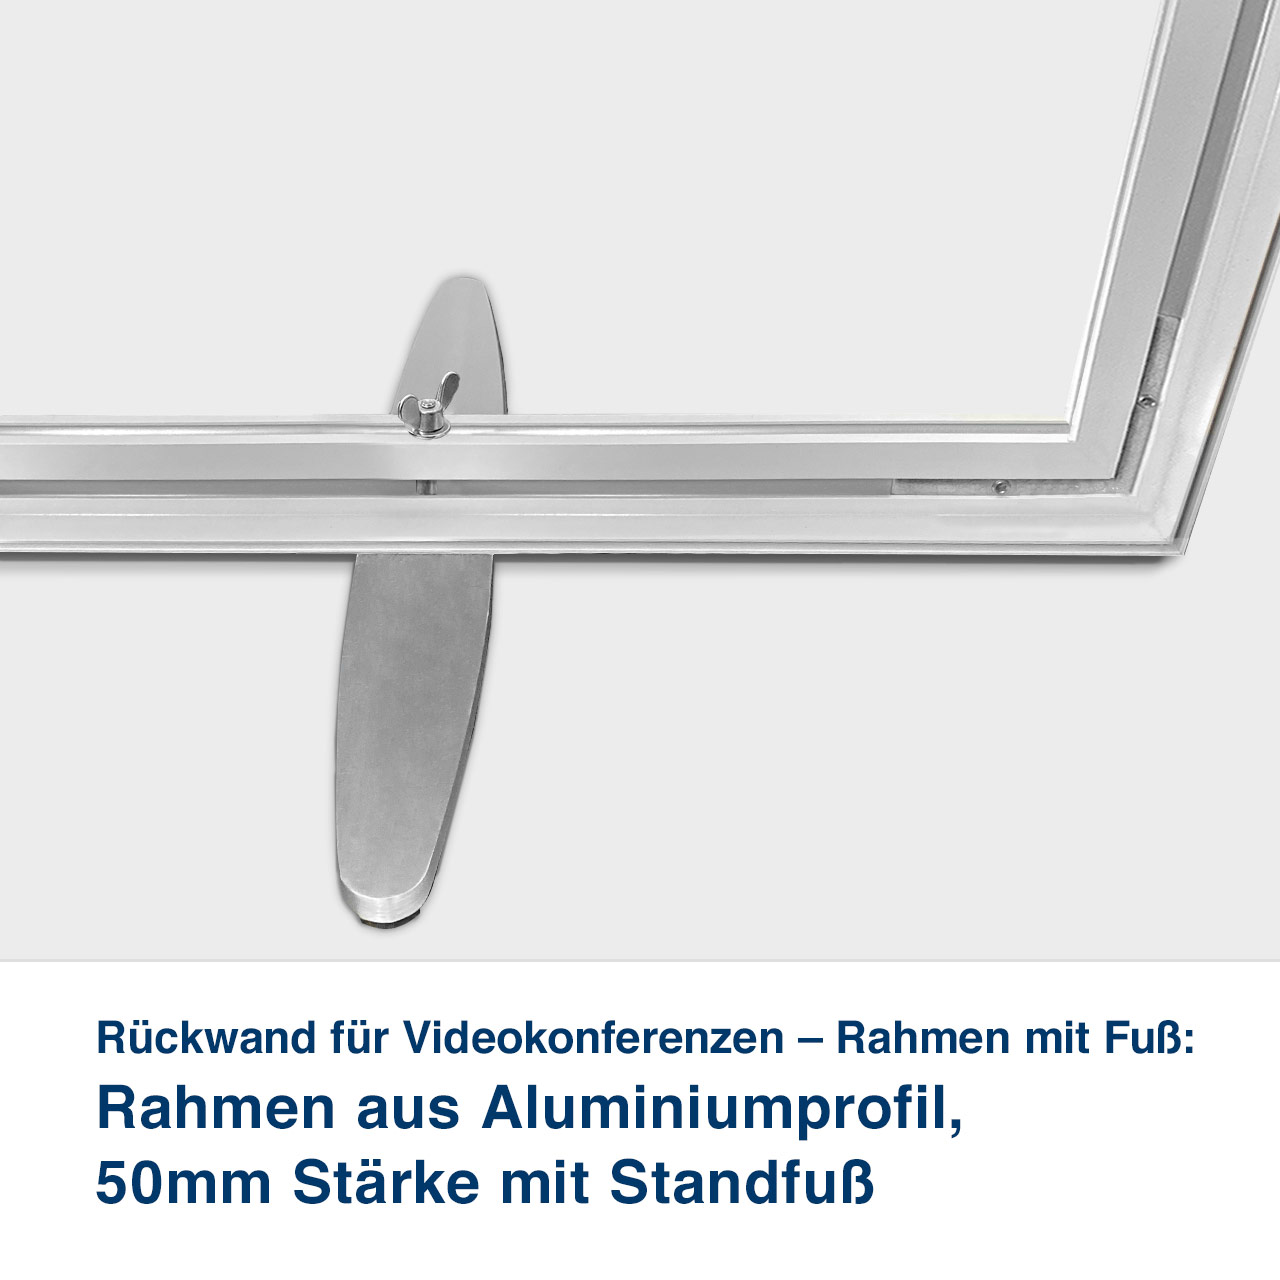 Rückwand für Videokonferenzen – Rahmen mit Fuß:   Rahmen aus Aluminiumprofil,  50mm Stärke mit Standfuß